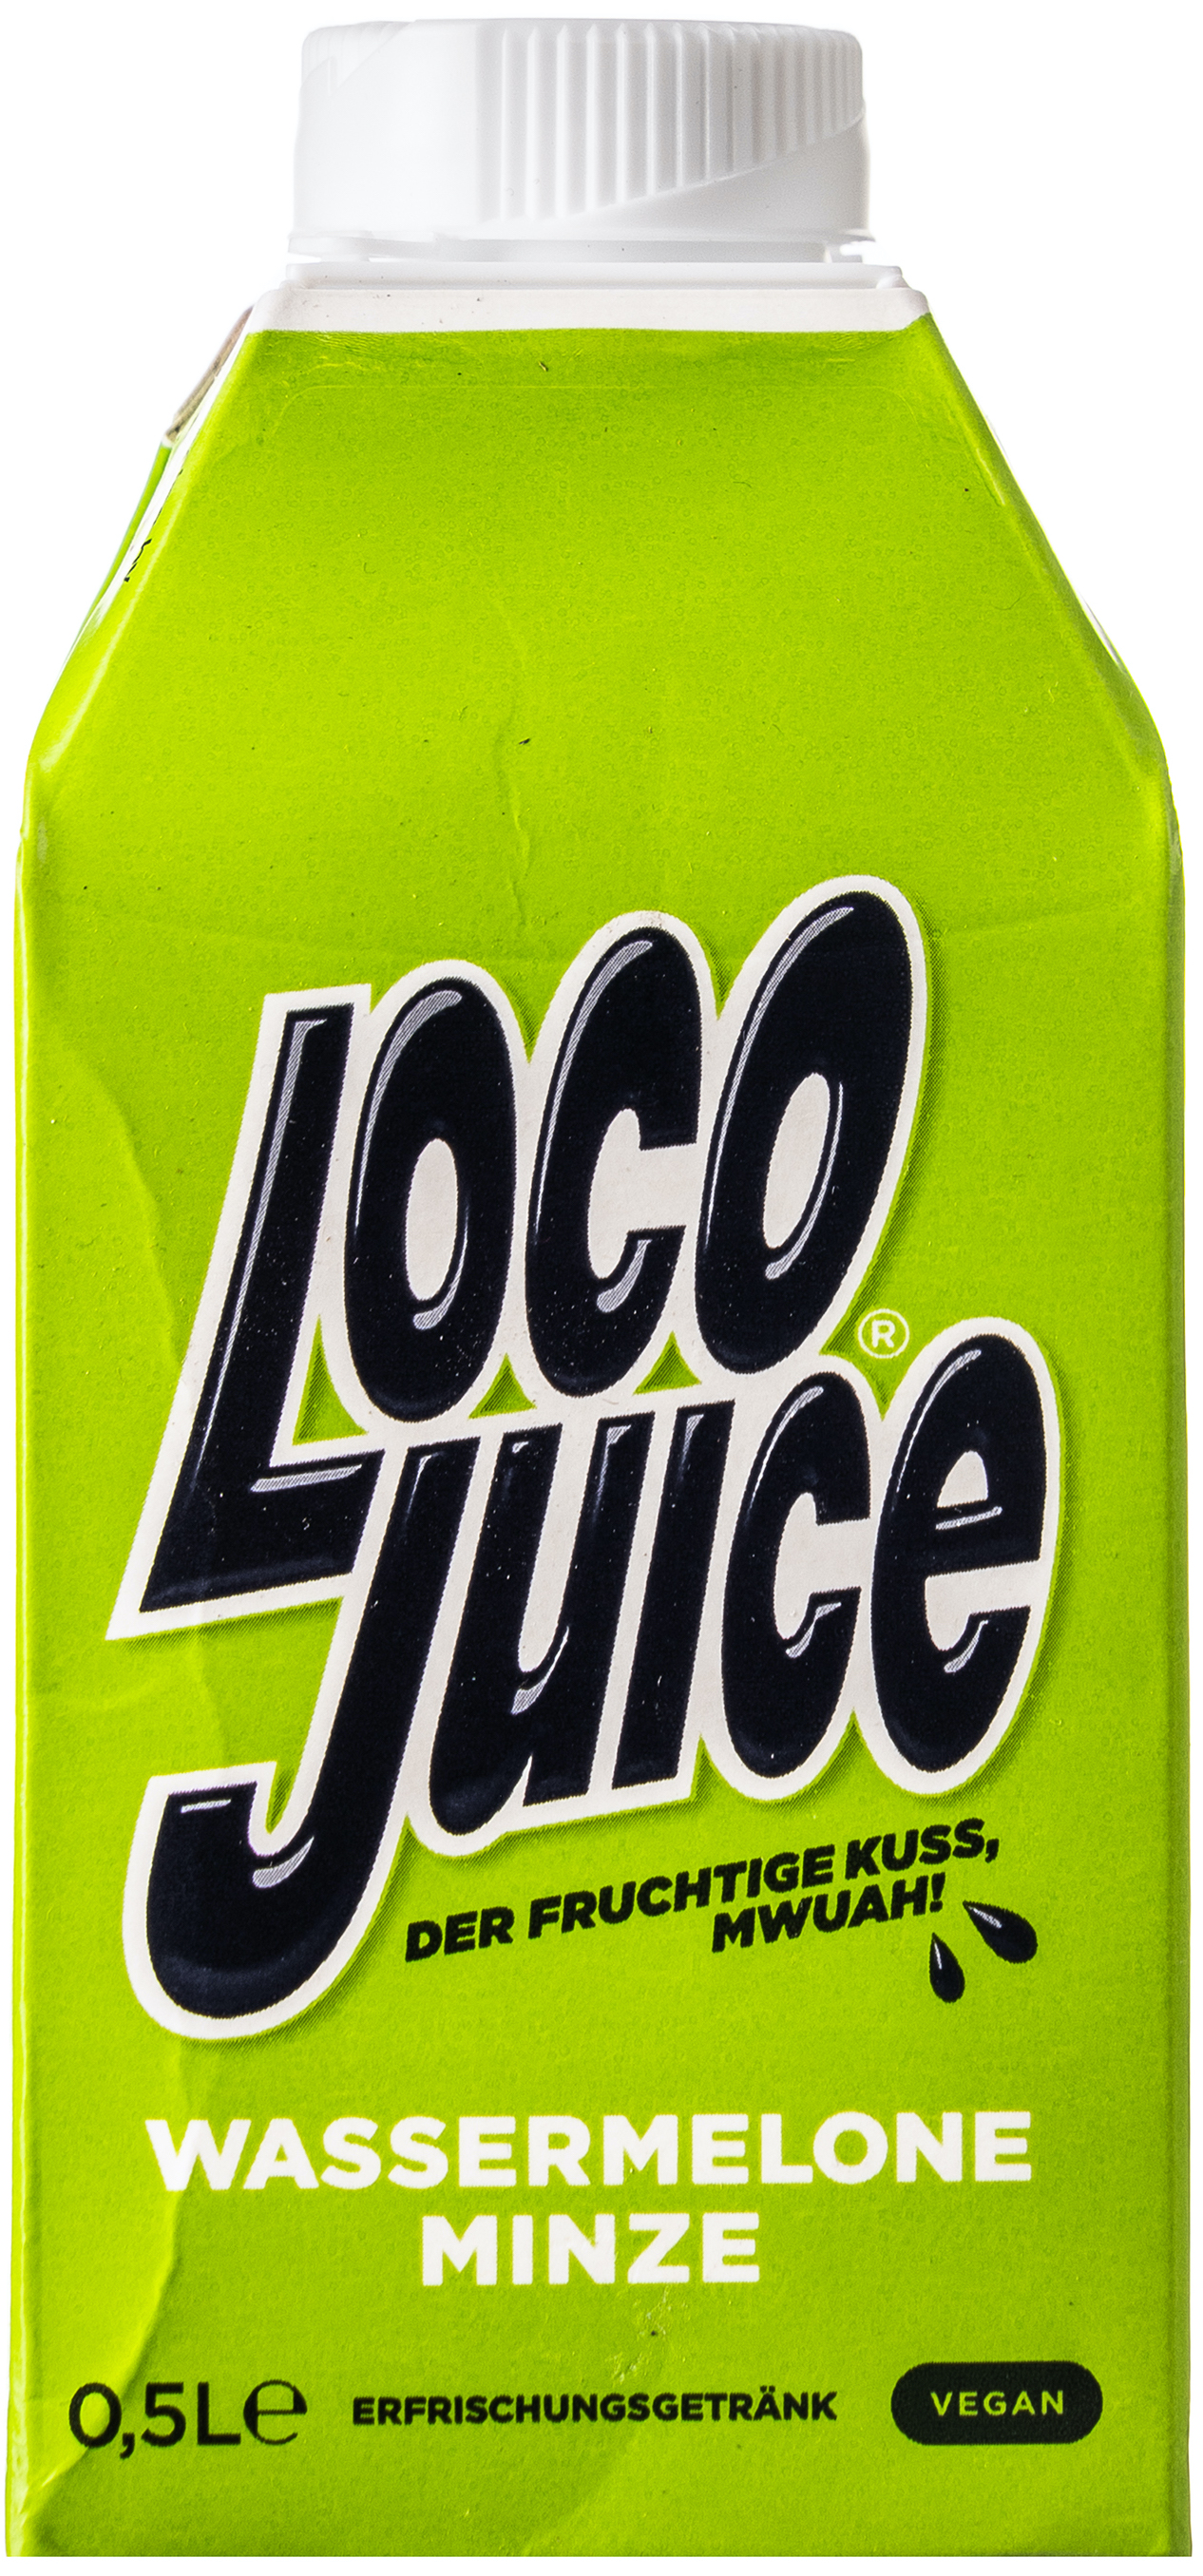 Loco Juice Wassermelone Minze 0,5L